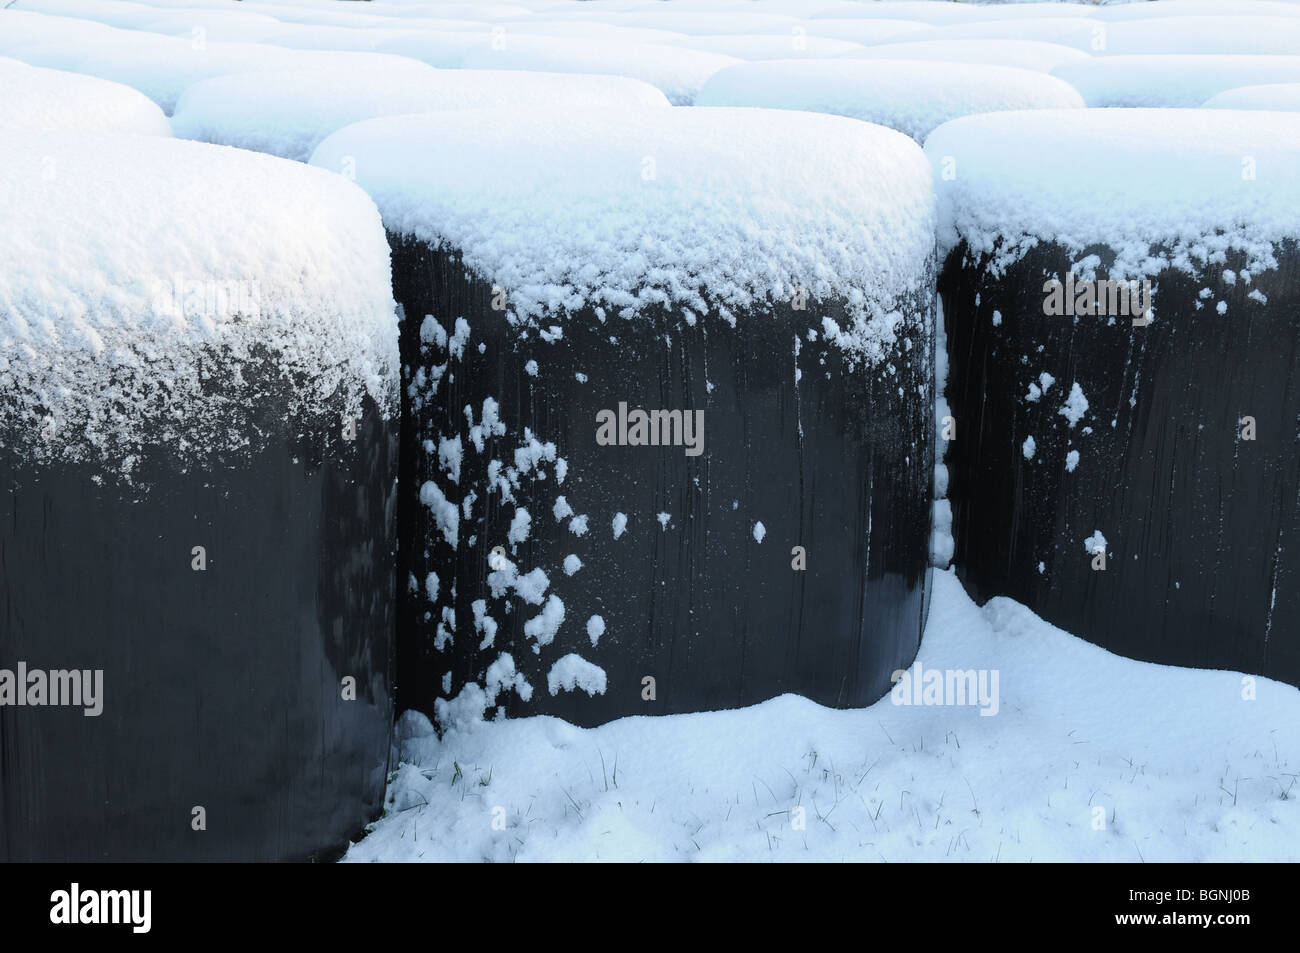 Pinte di neve, balle di fieno avvolto in plastica nera simile pinte di Guinness, Slane, Co. Contea di Meath, Irlanda Foto Stock